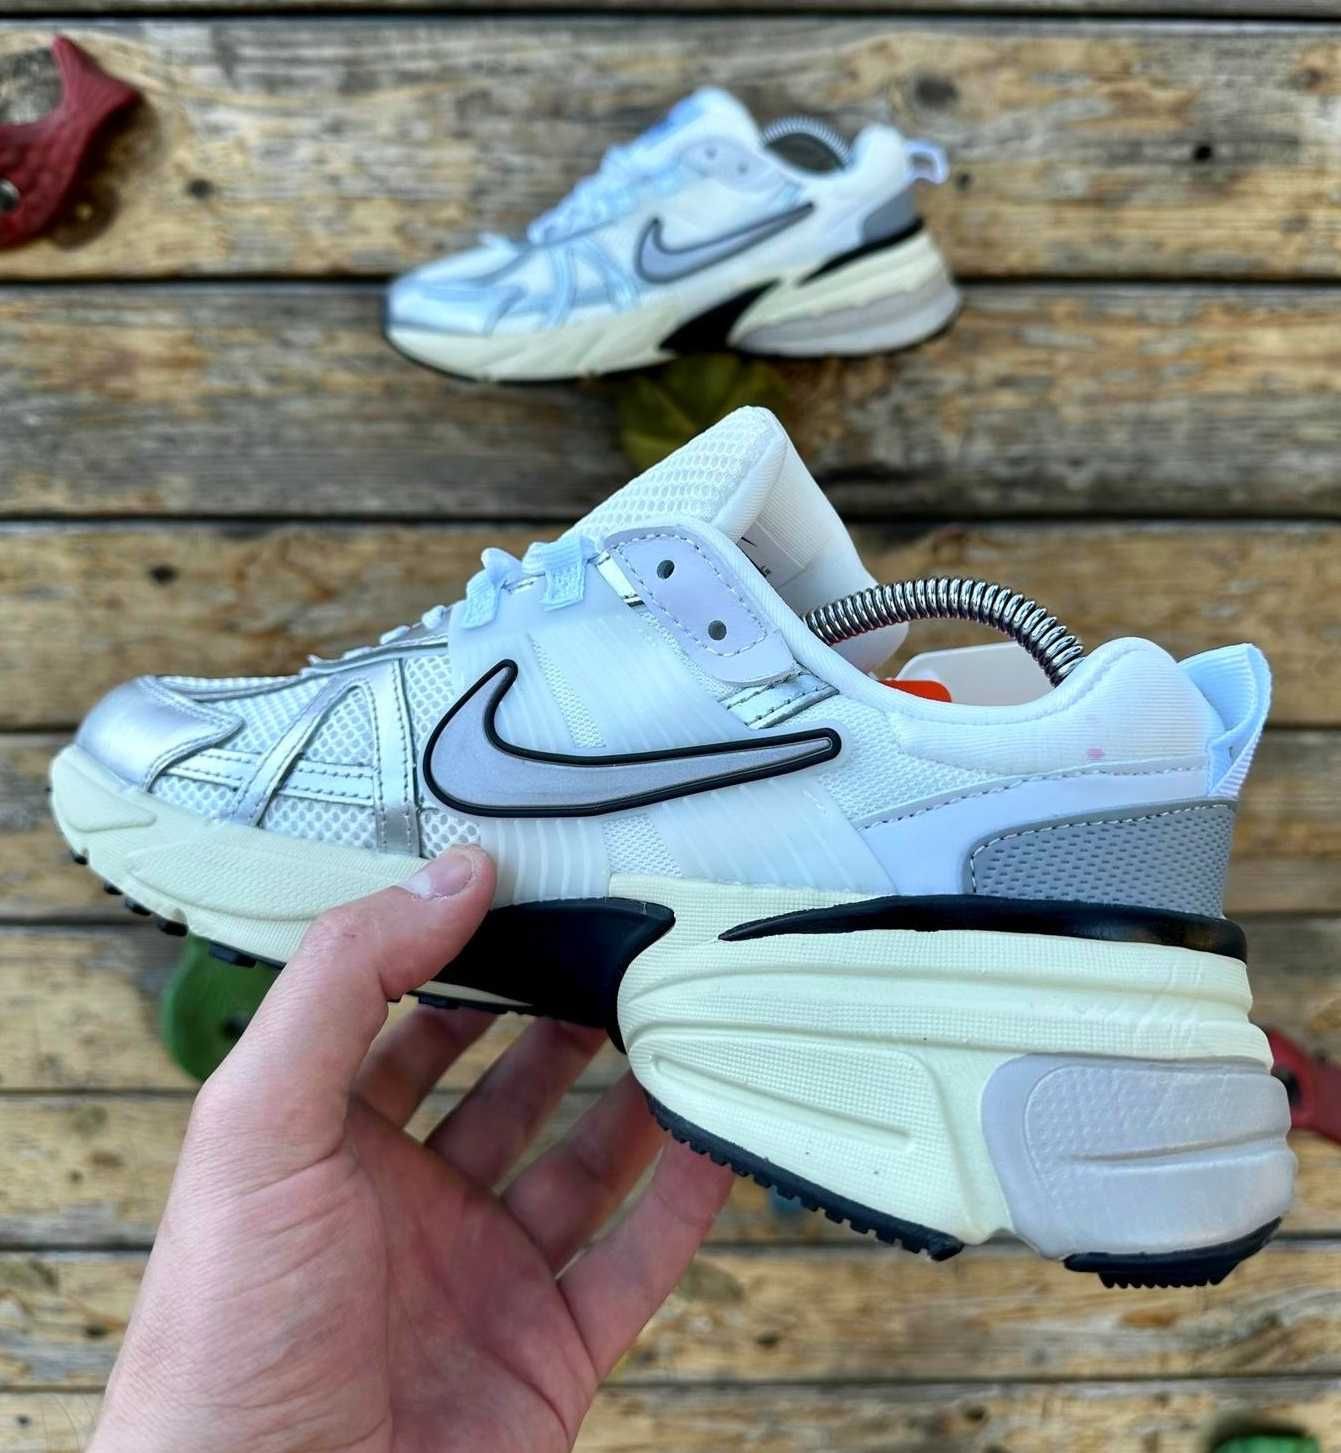 Мужские кроссовки Найк белые серебристые Nike сеточка летние